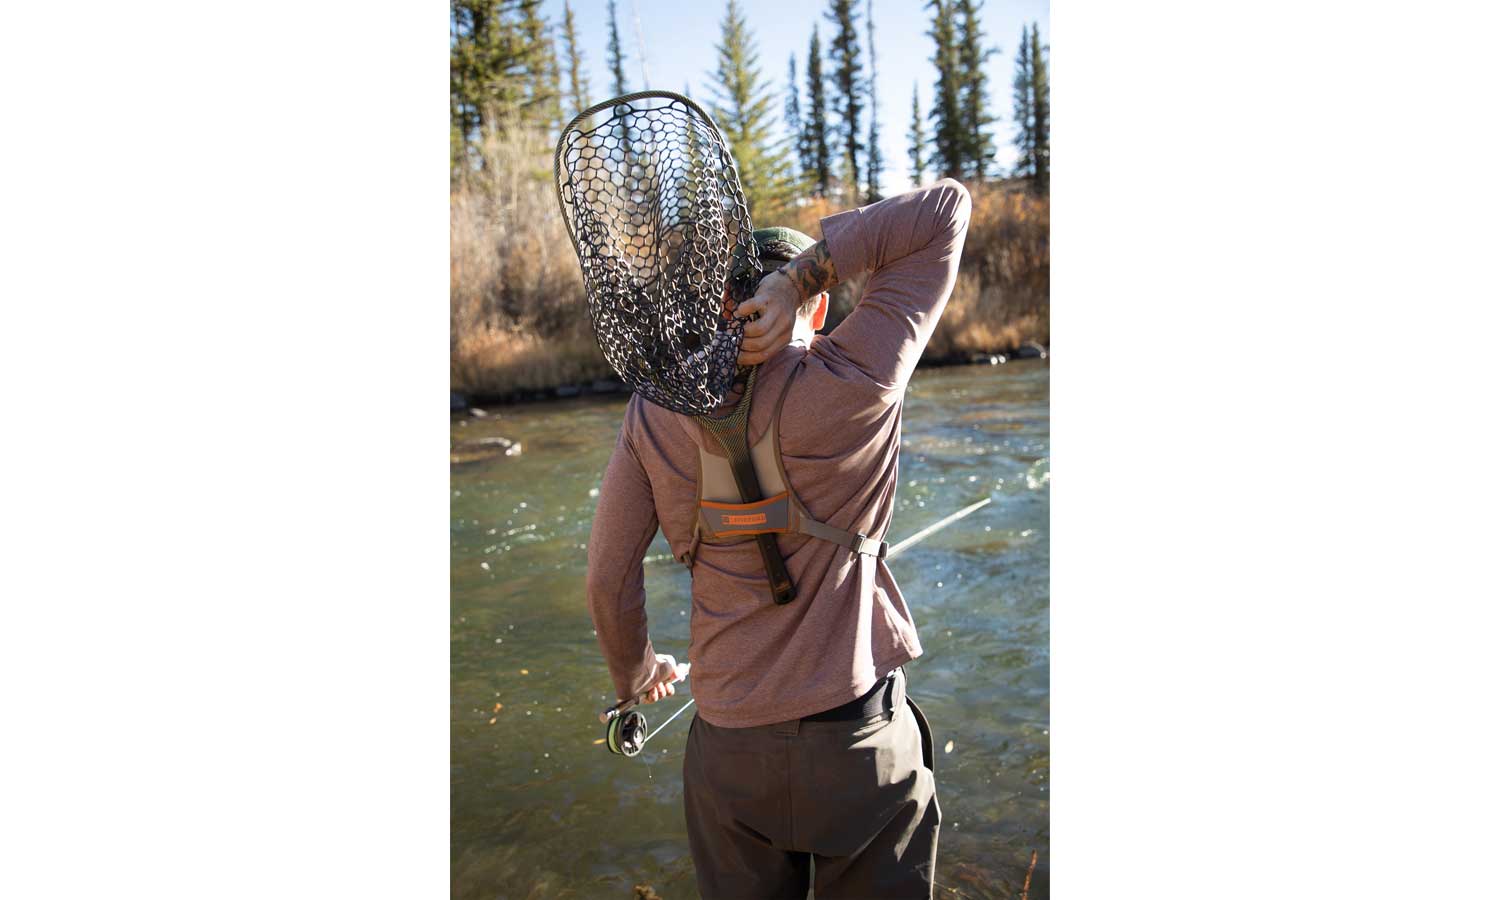 Net Holster - Fly Fishing – Fishpond